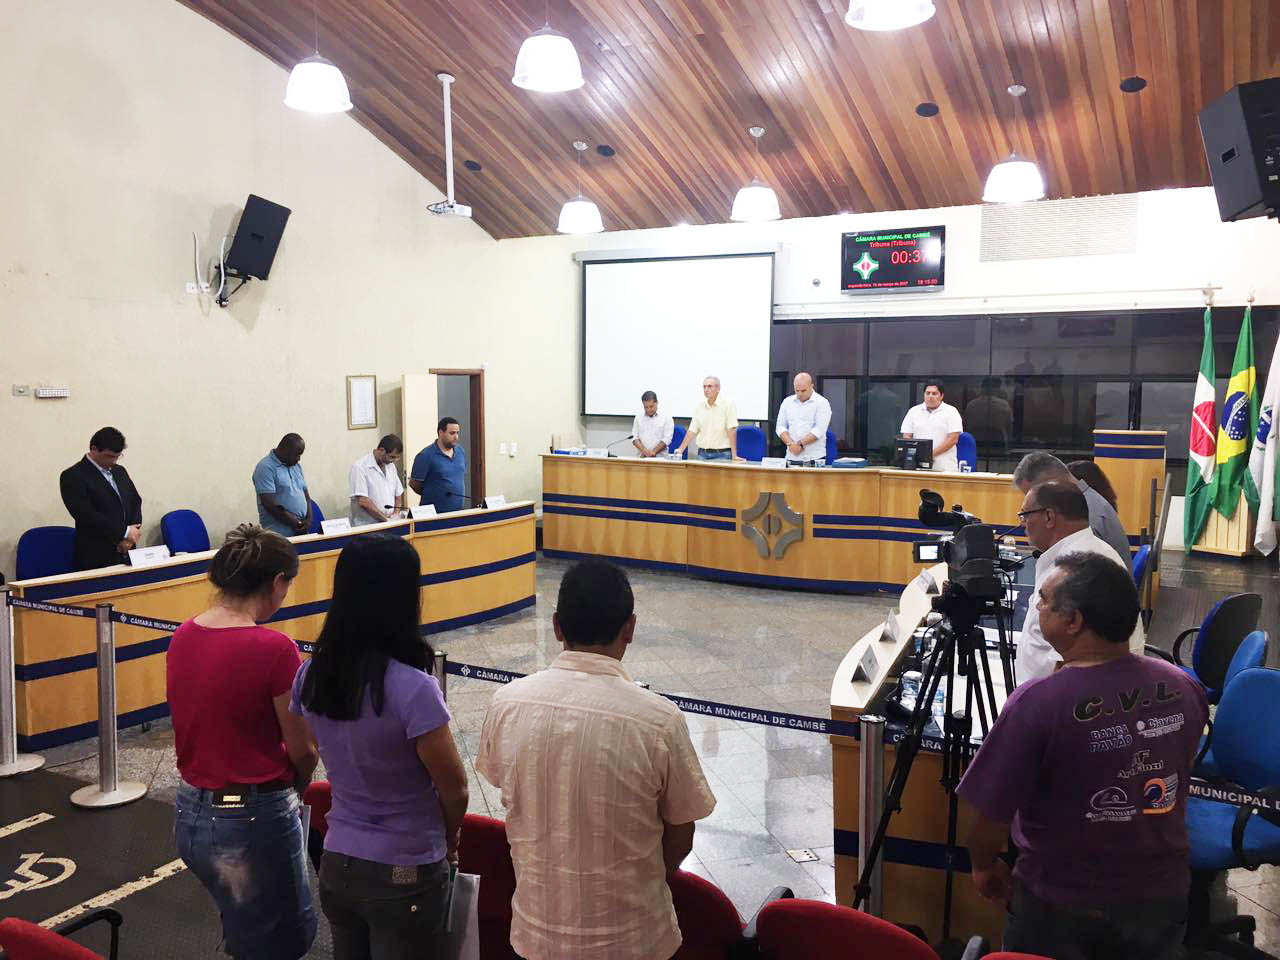           Câmara Municipal realiza um minuto de silêncio pela morte do munícipe Sr. Orlando Balduino dos Santos.